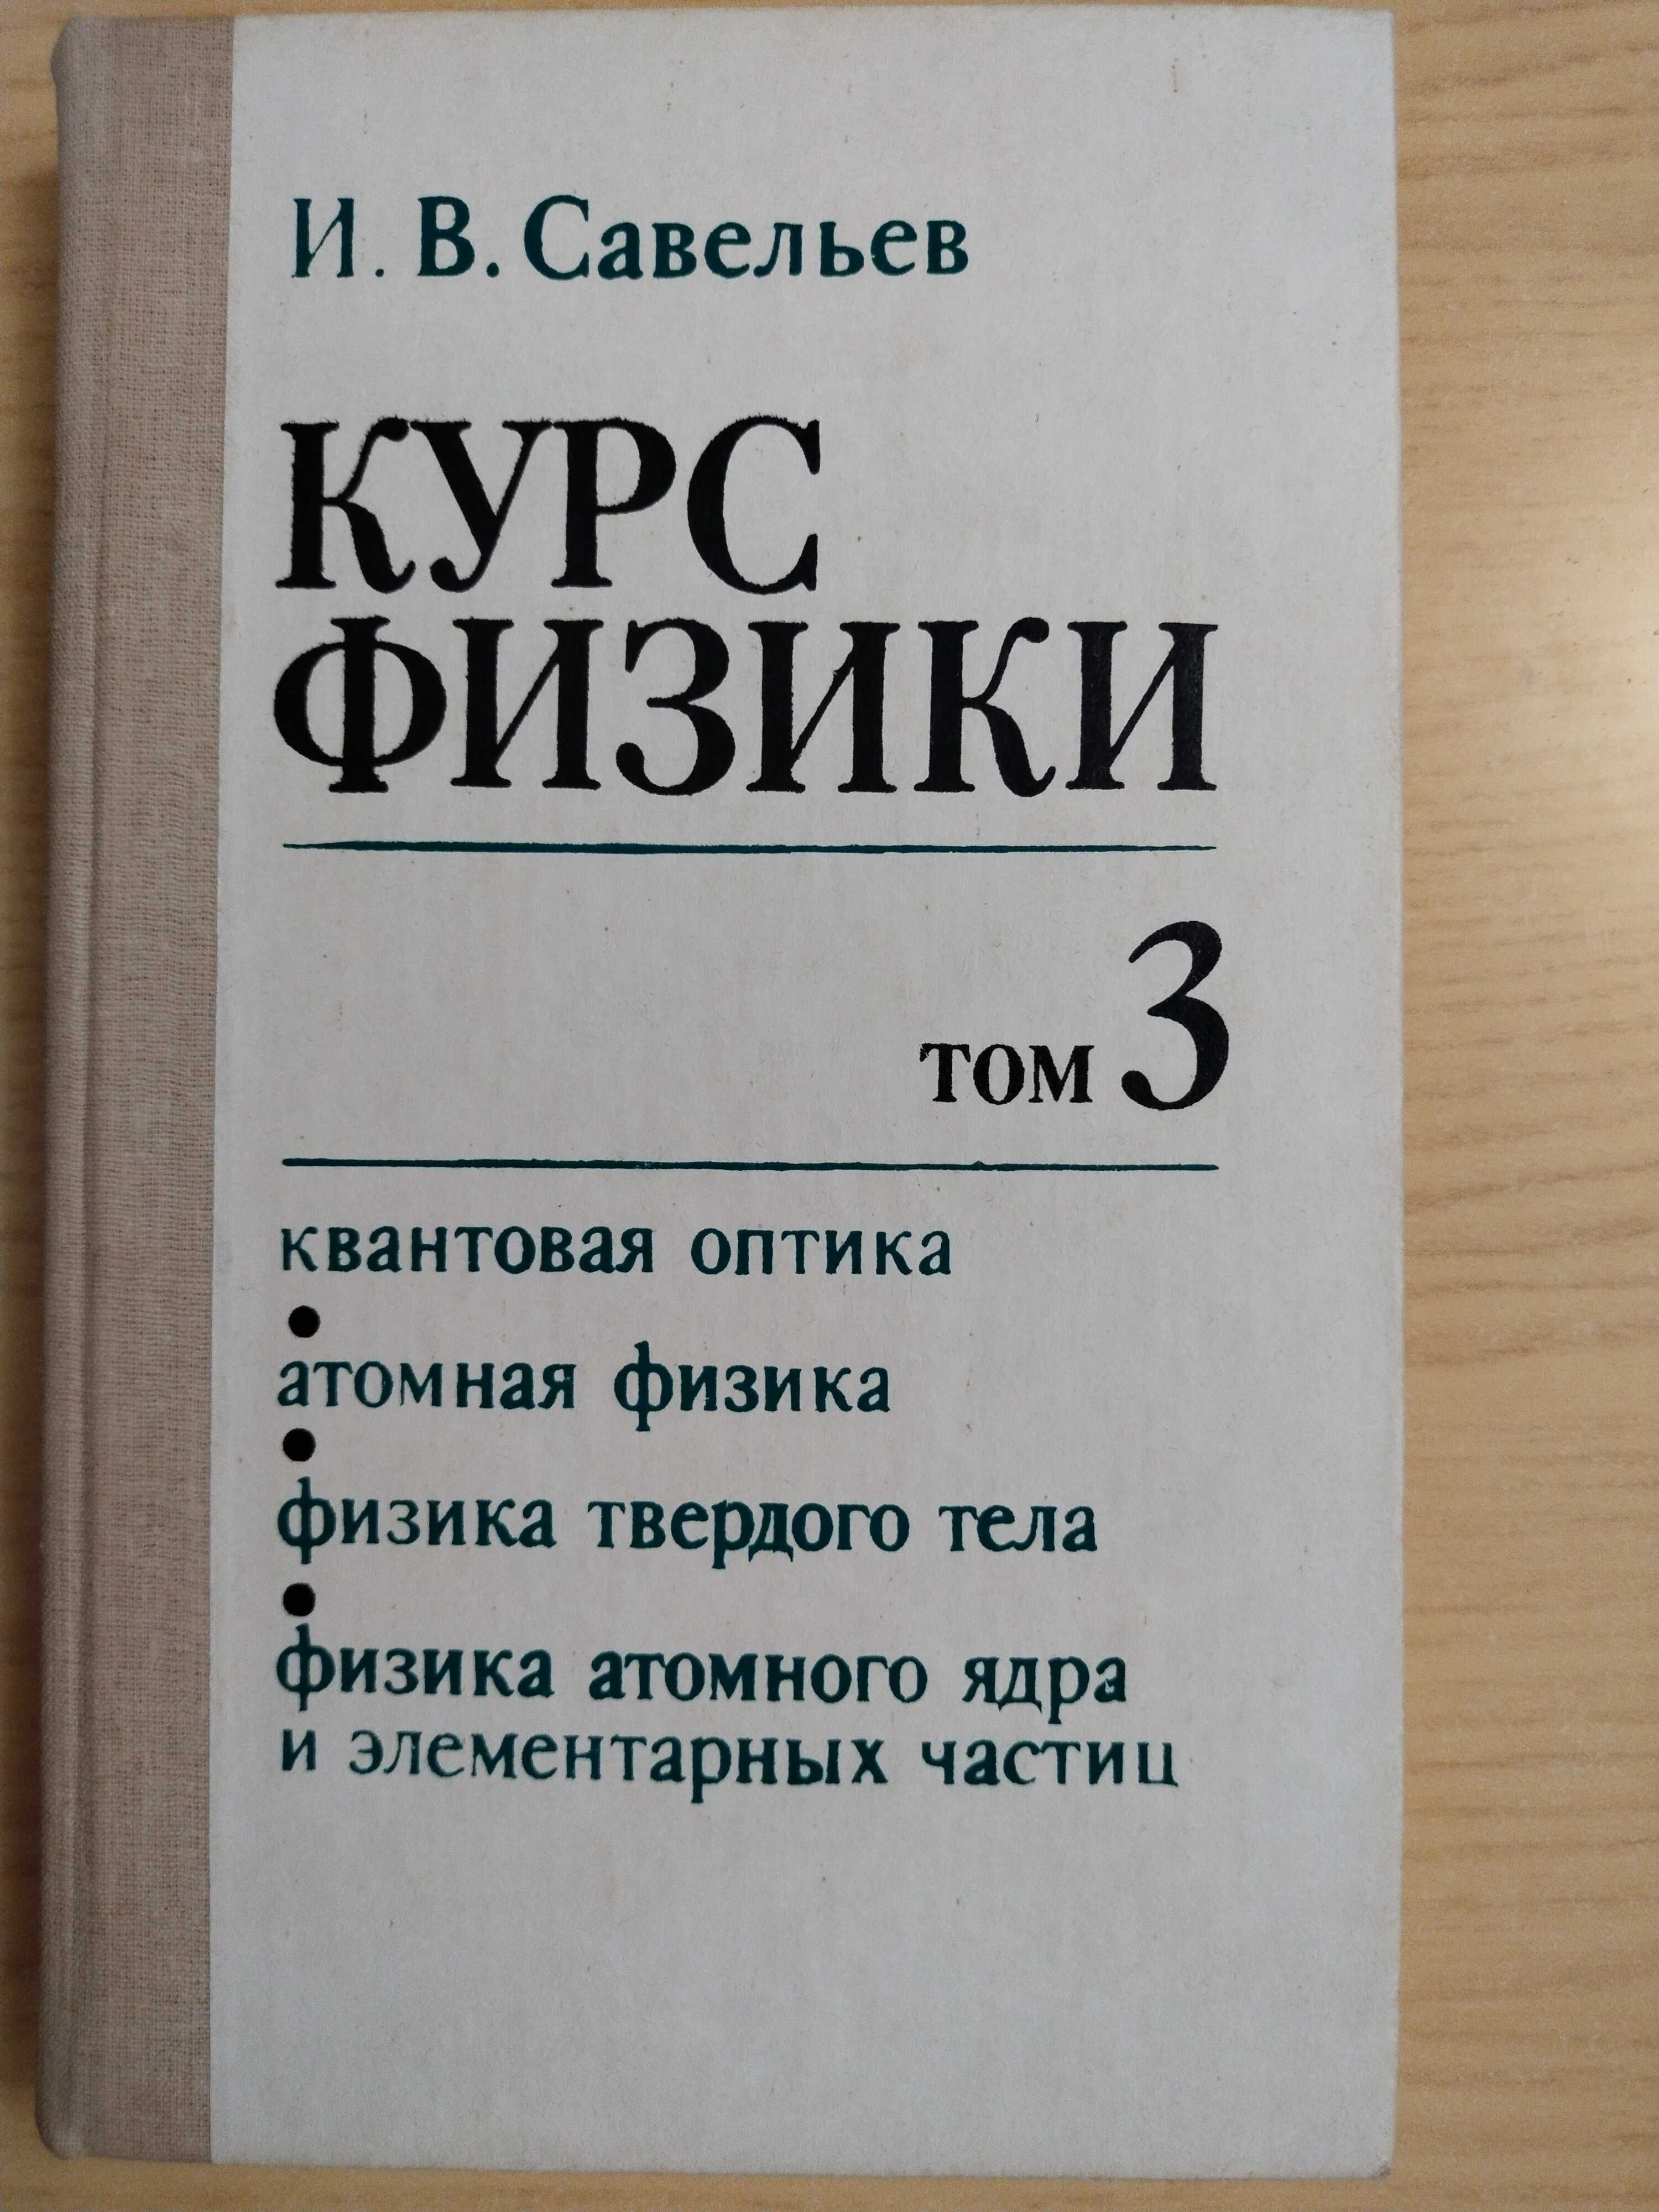 Курс физики, том 3, И.В.Савельев